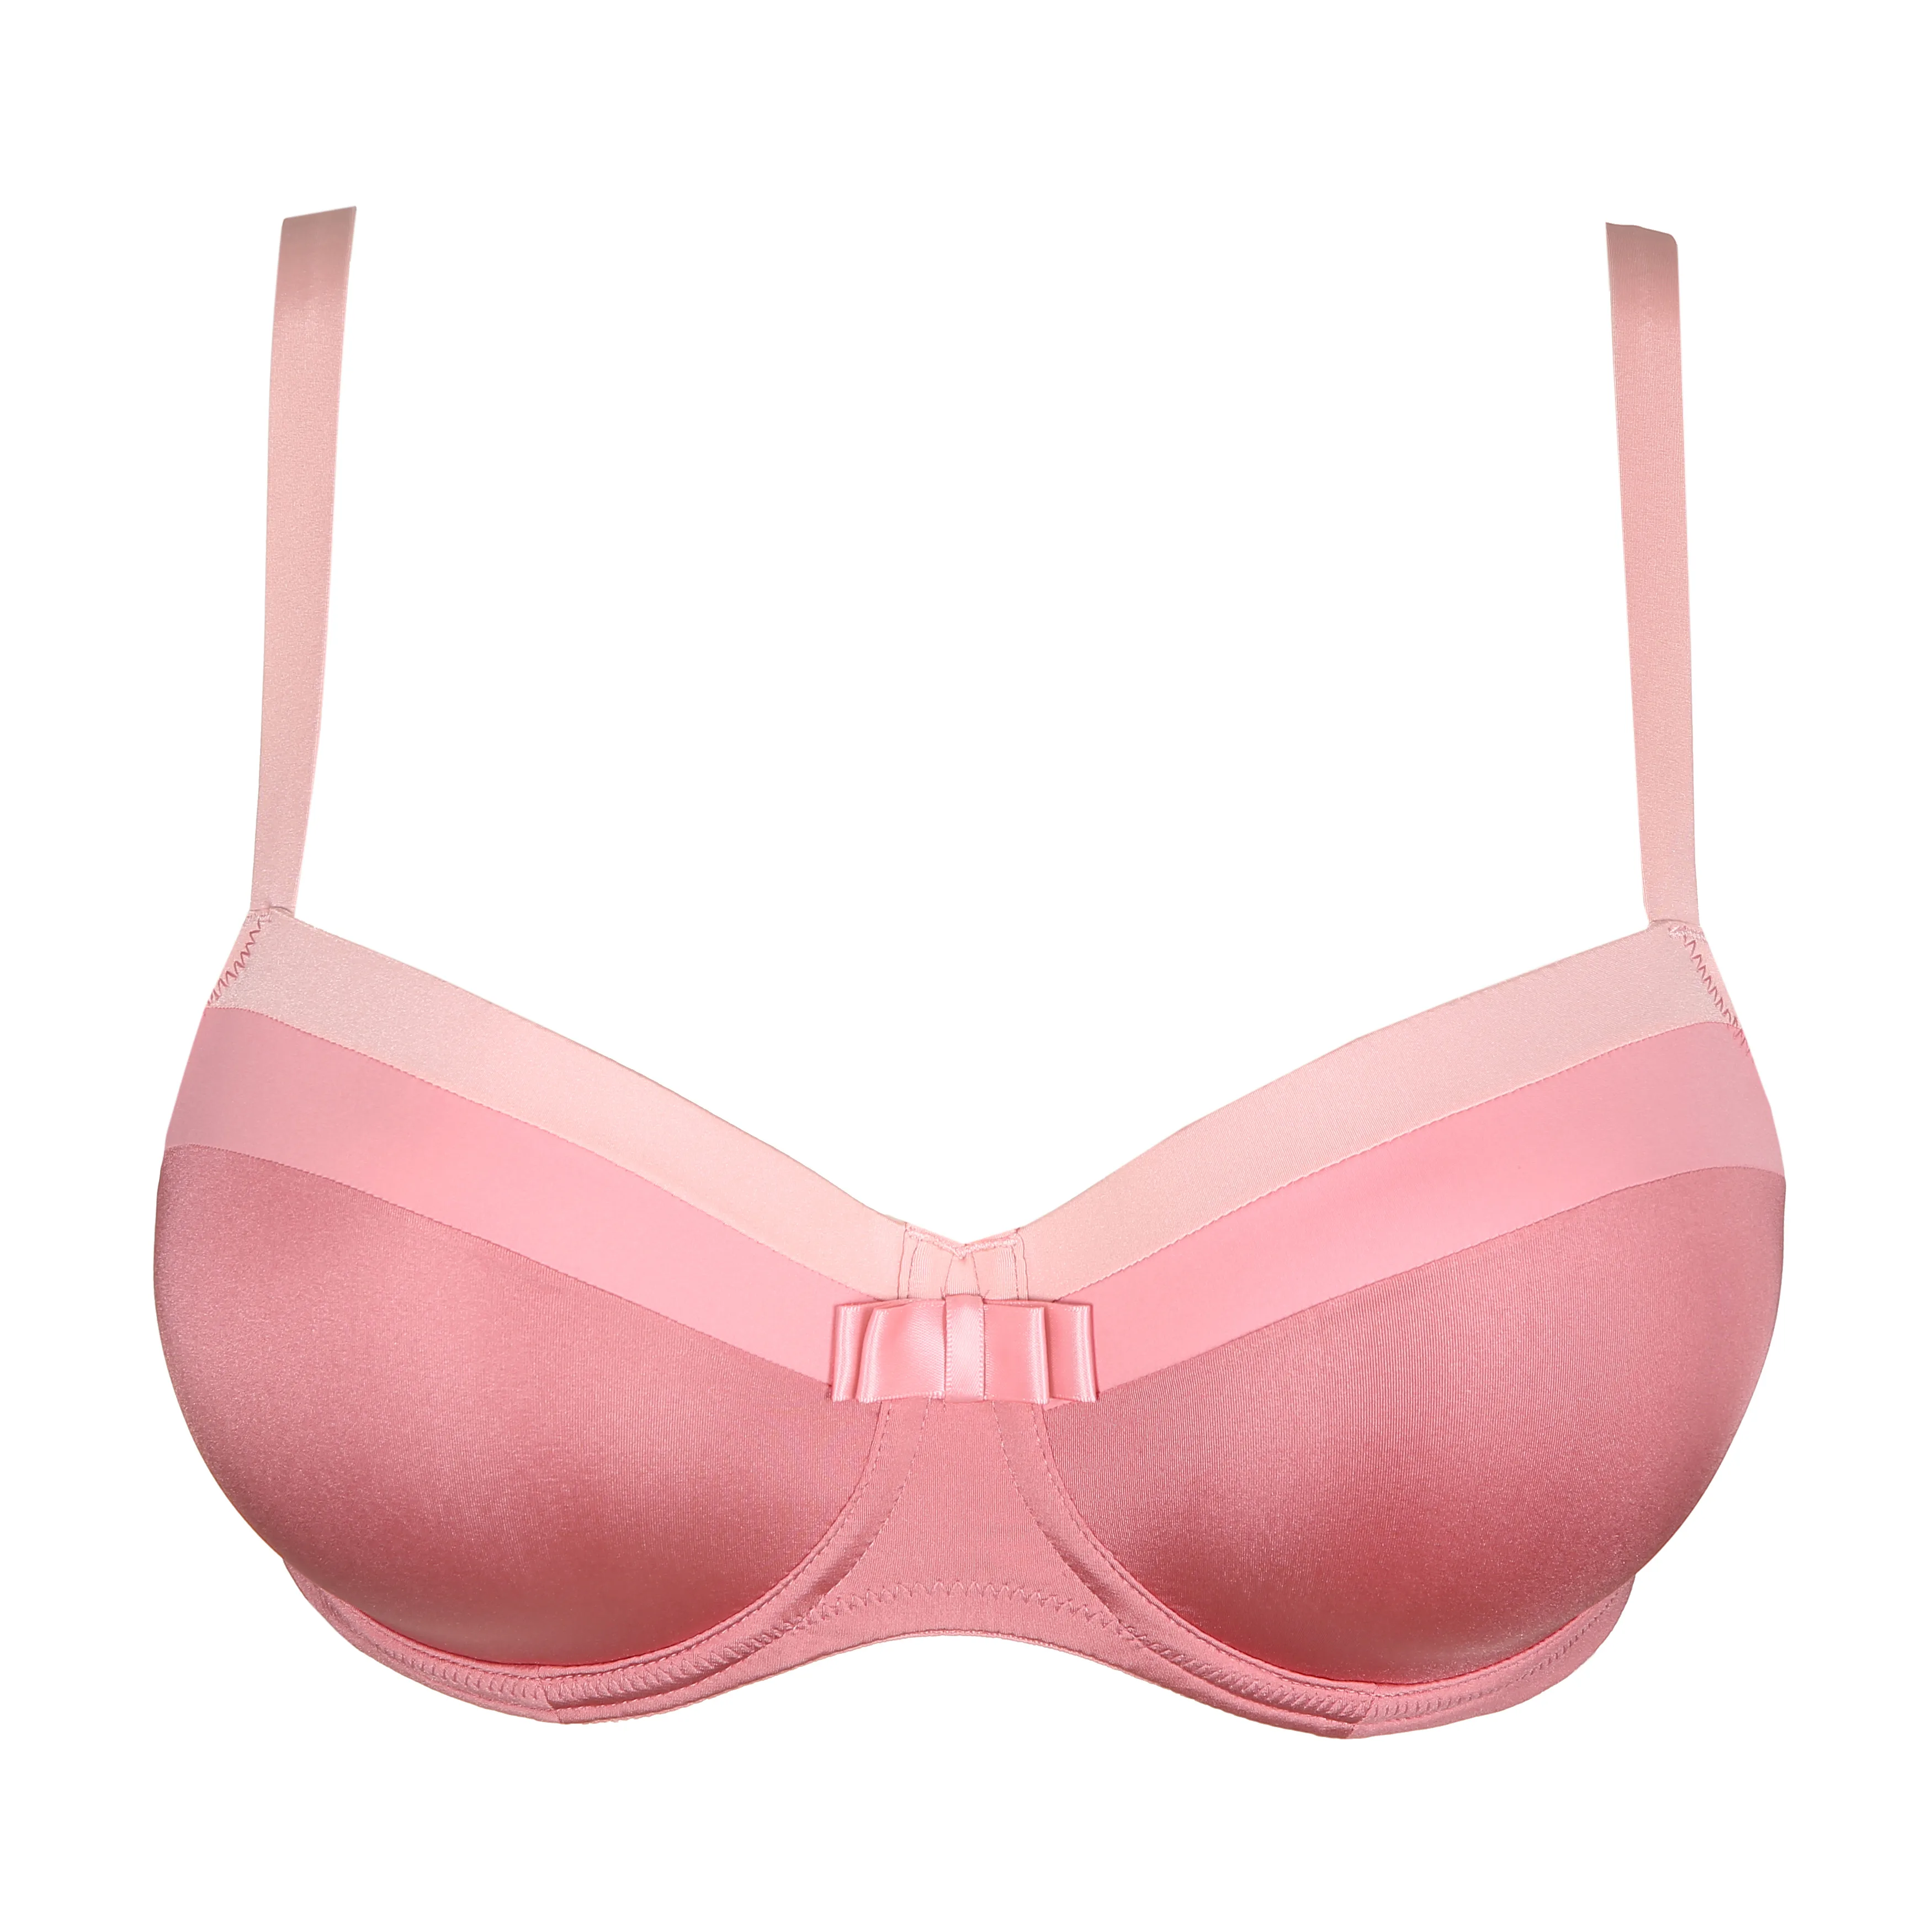 PrimaDonna TWIST GLOW FULL - Underwired bra - ballet pink/pink - Zalando.de